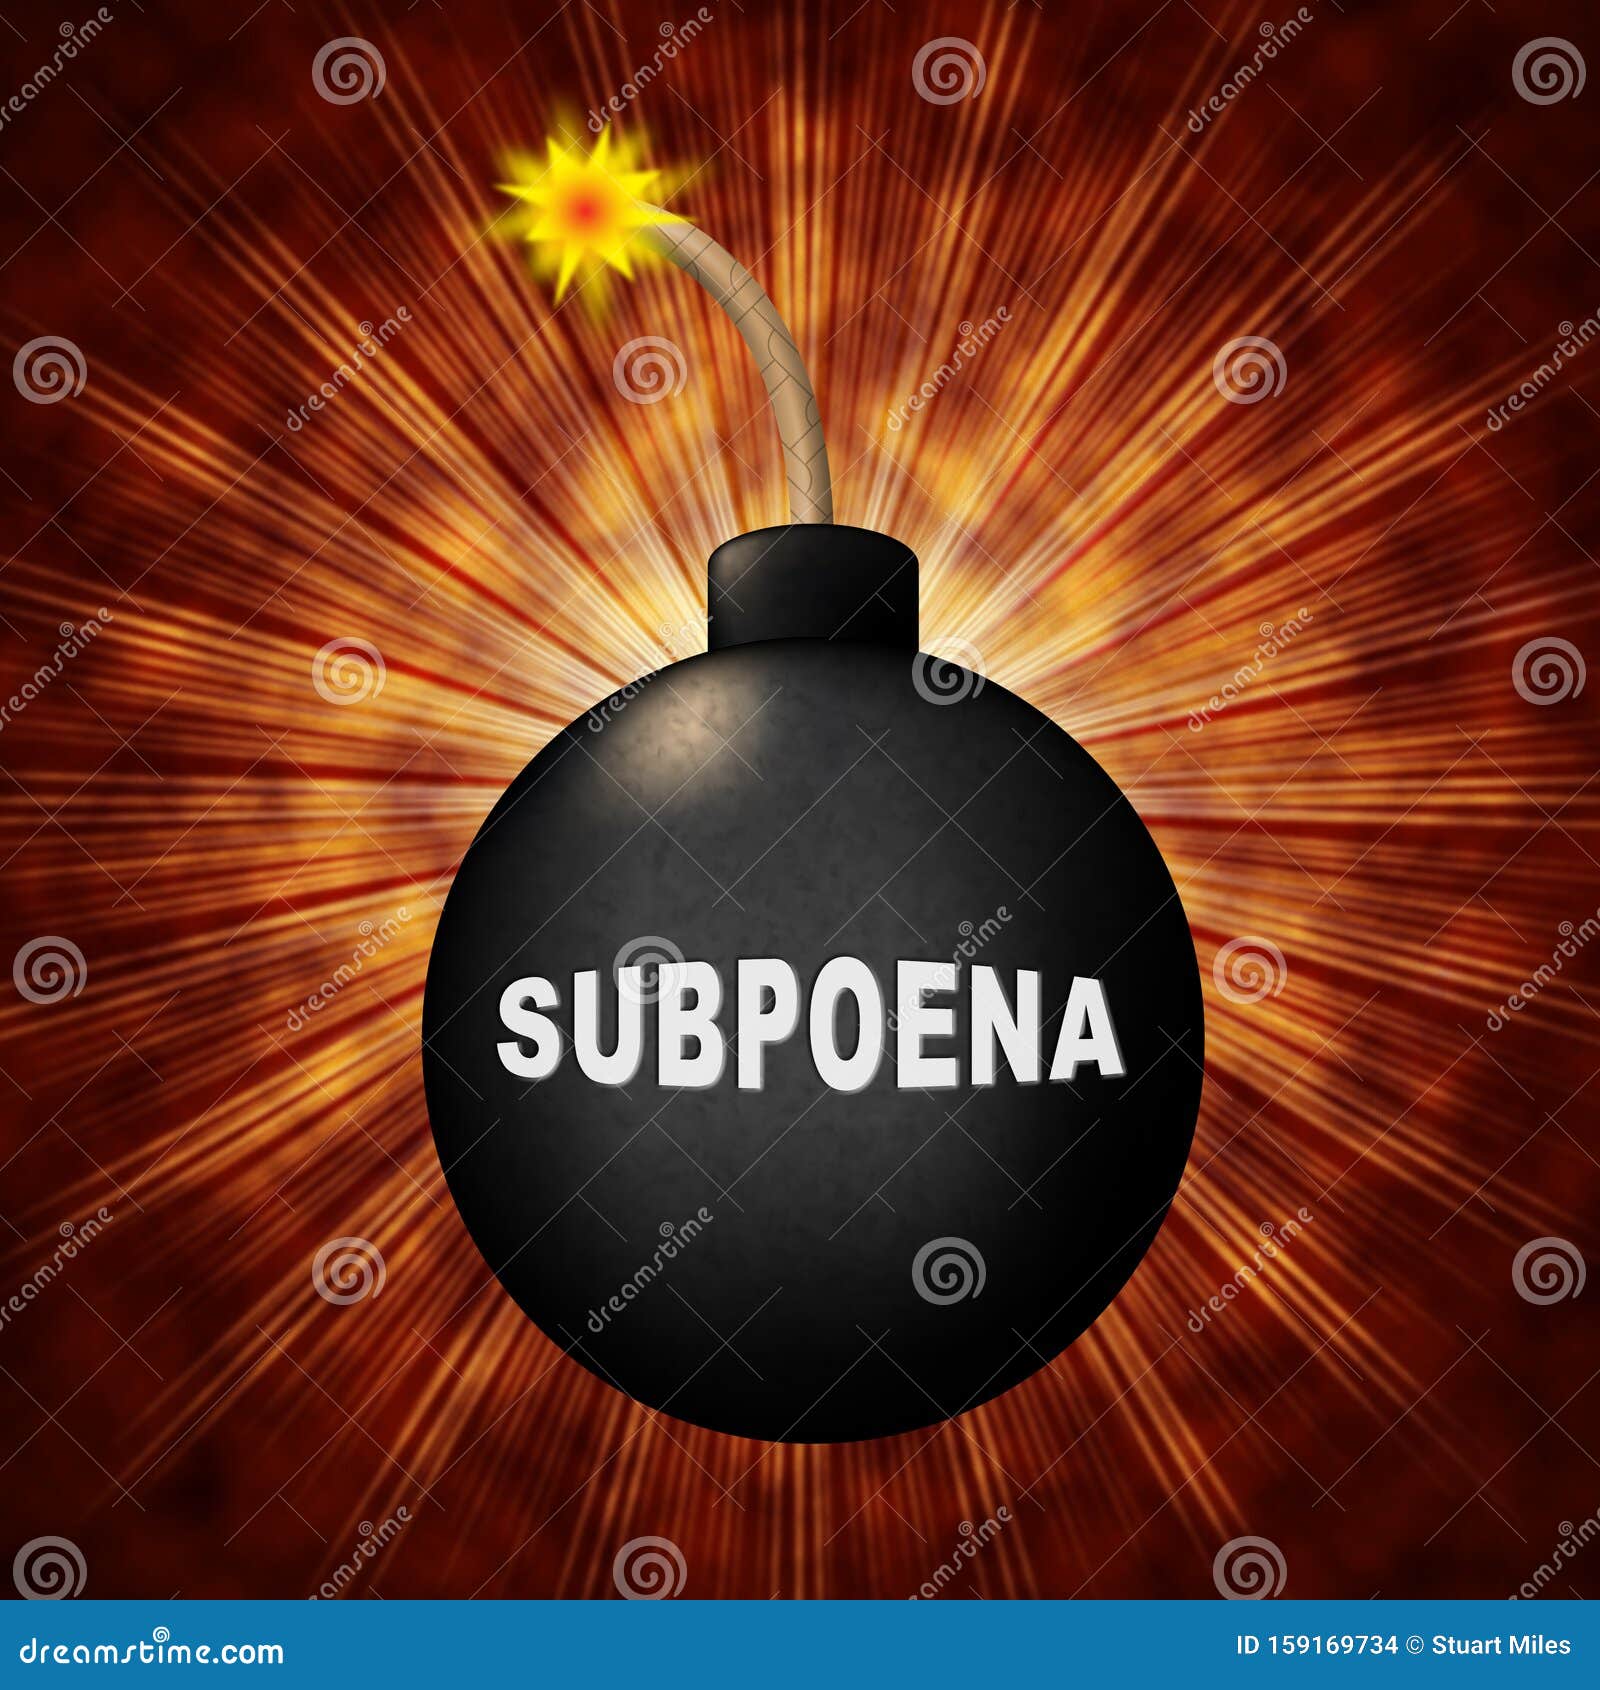 court subpoena bomb represents legal duces tecum writ of summons 3d 